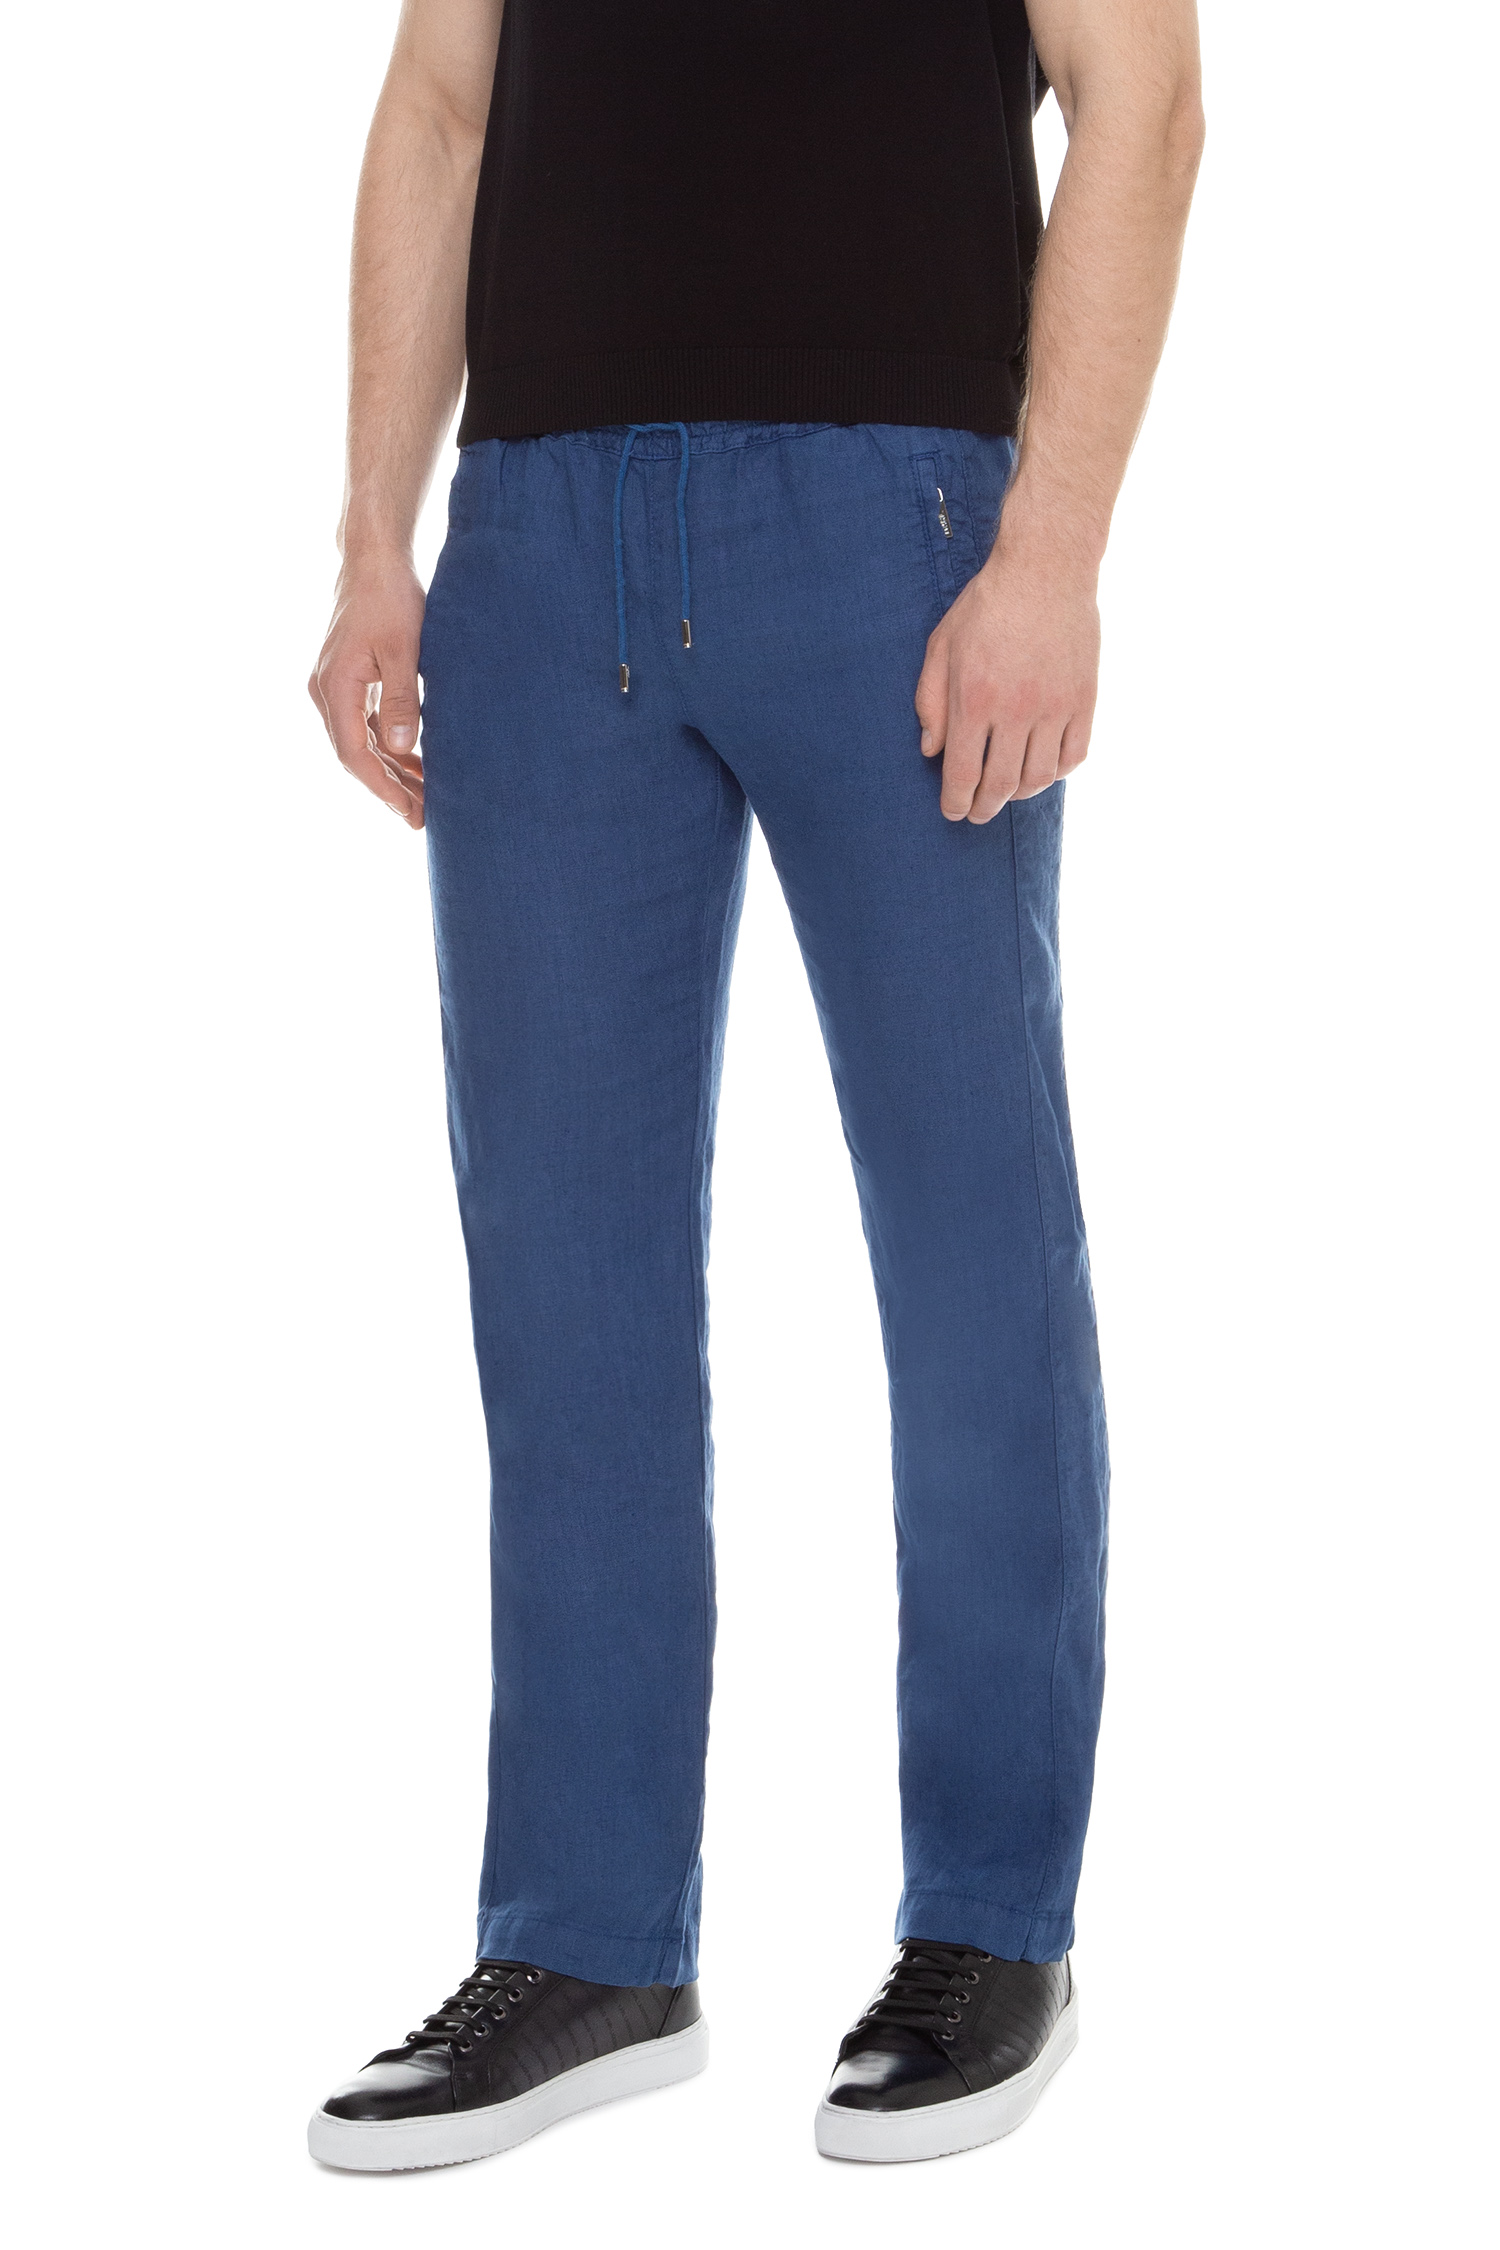 Чоловічі сині лляні брюки Karl Lagerfeld 591815.255815;650